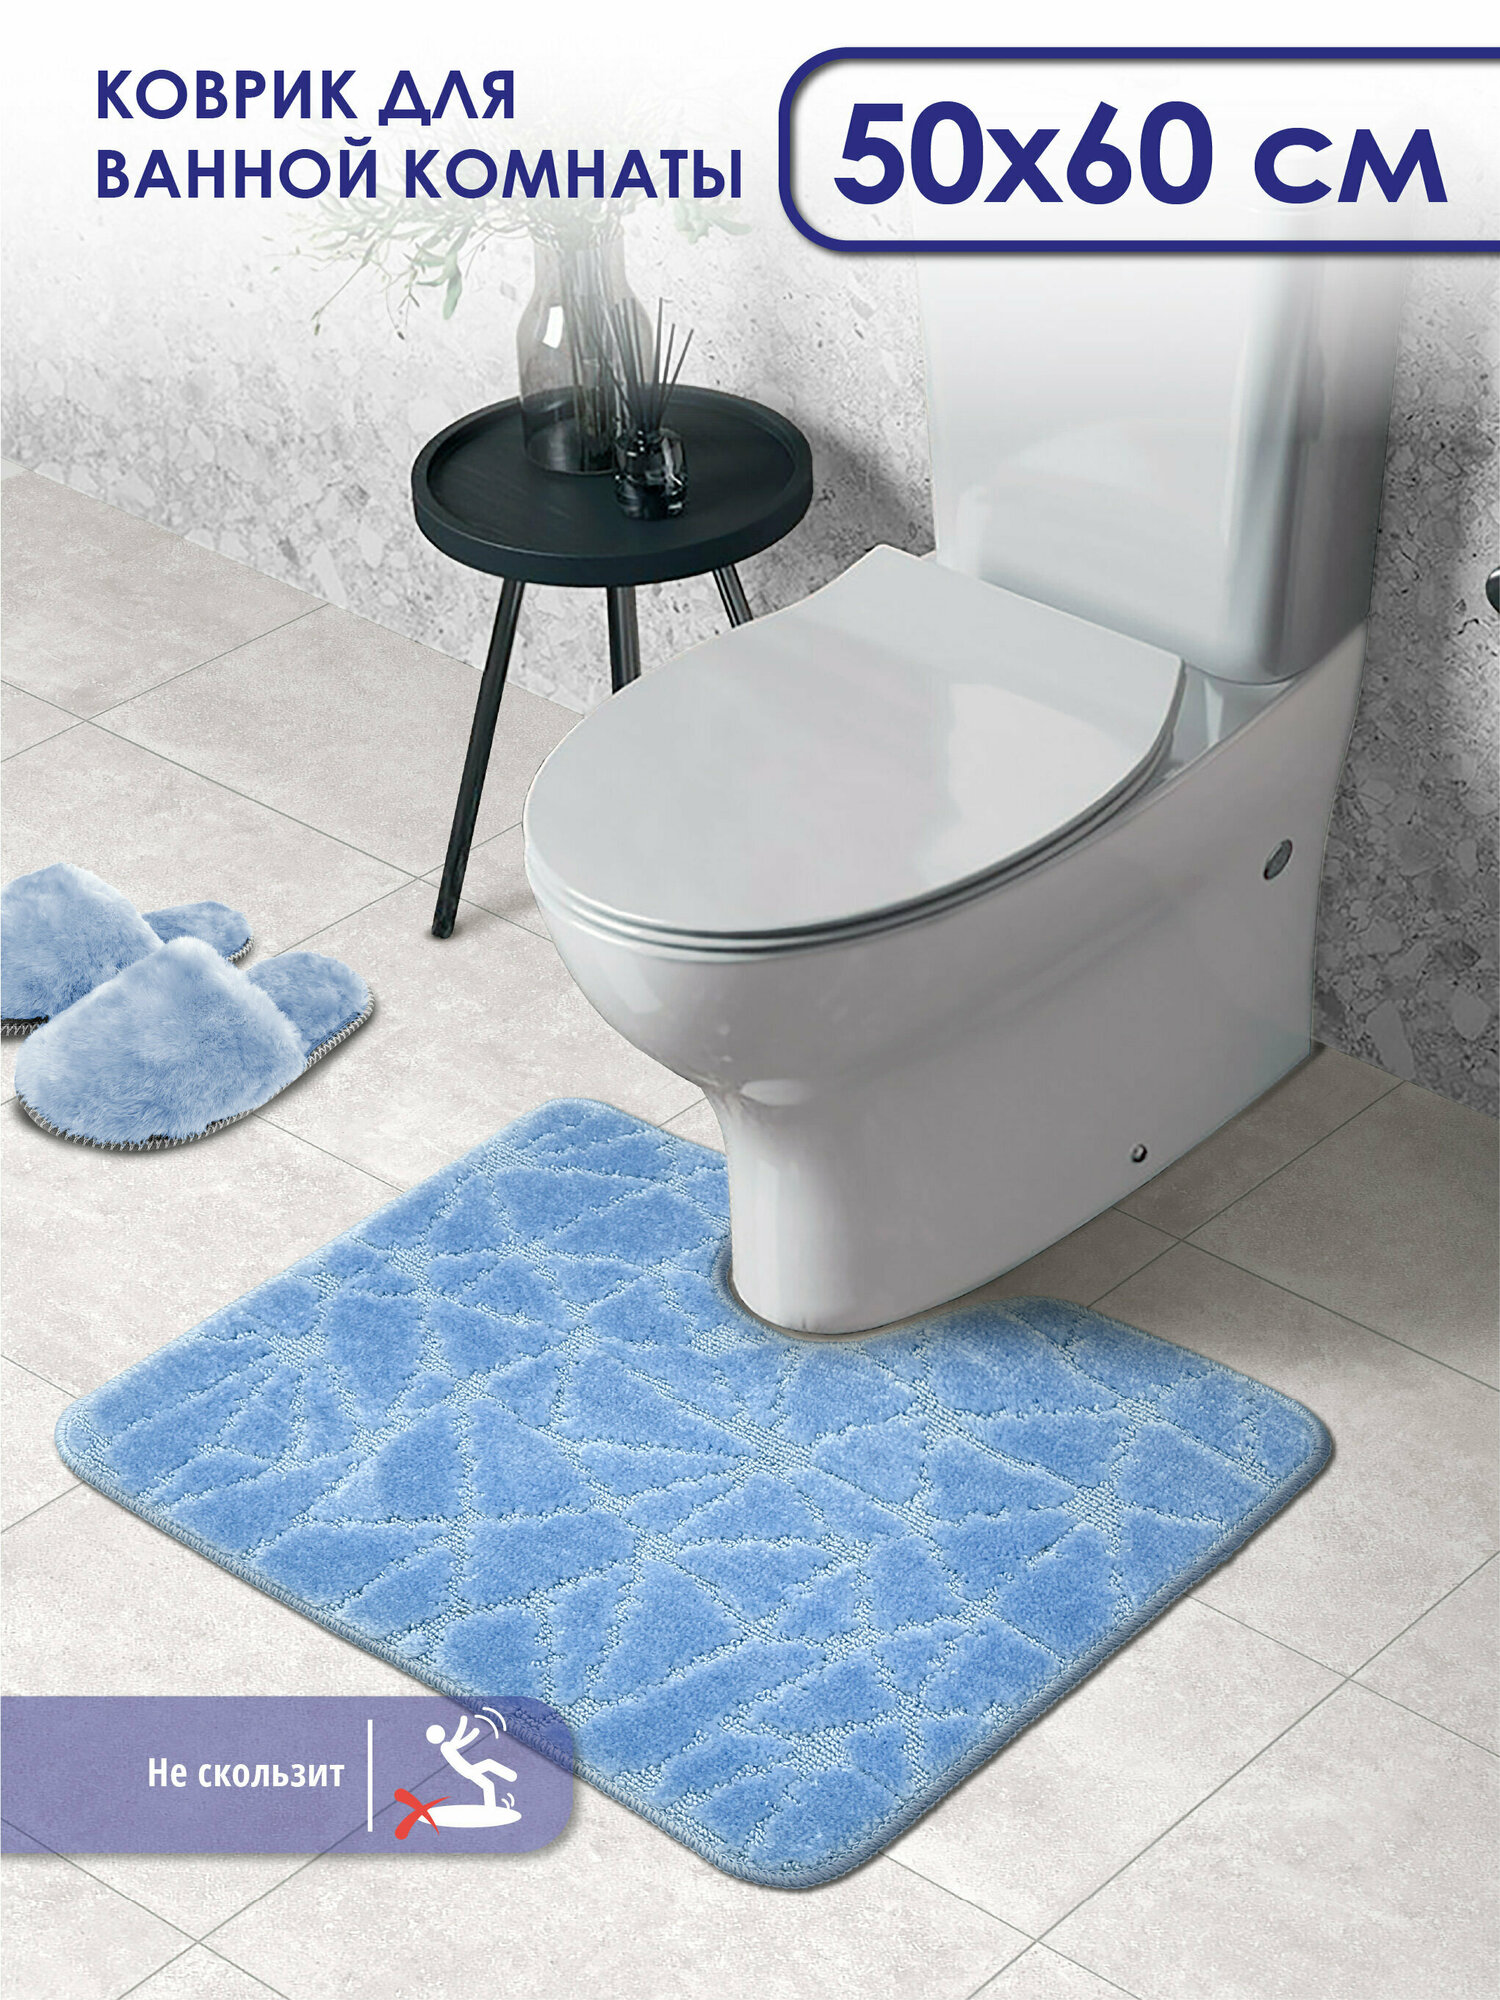 Коврик для ванной и туалета SHAHINTEX PP противоскользящий 50х60 001 голубой 11, коврик для туалета с вырезом